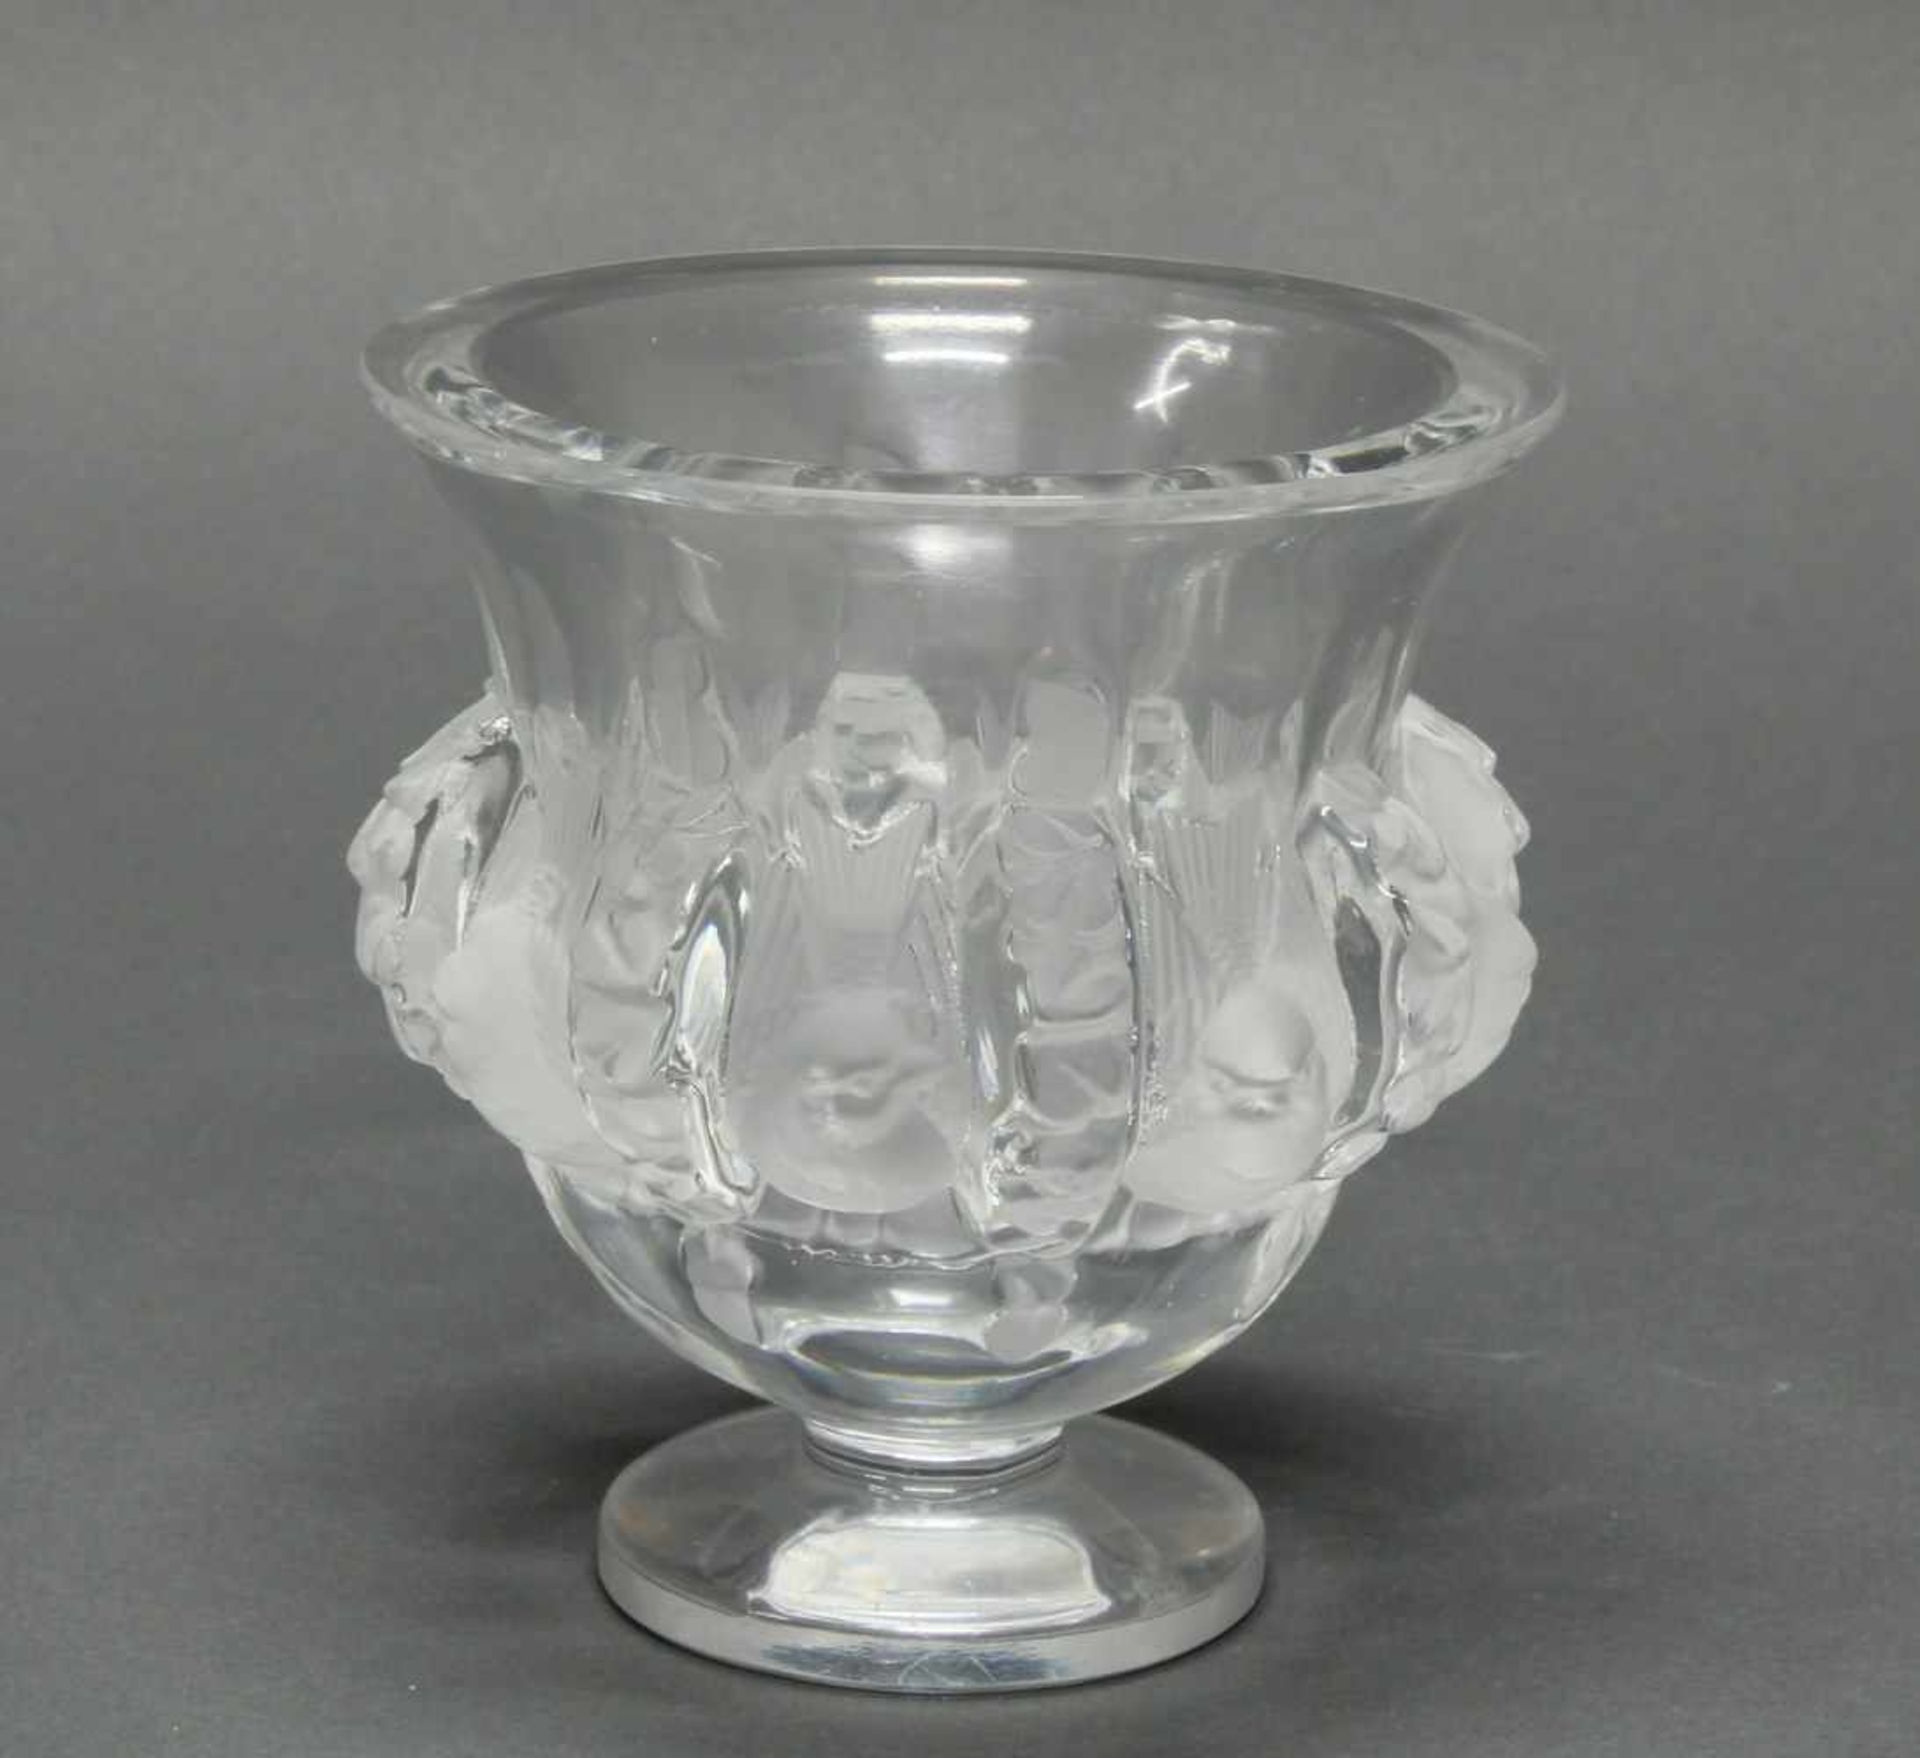 Vase, "Dampierre", Lalique, farbloses Glas, teils mattiert, am Boden umseitig bezeichnet Lalique - Image 2 of 4